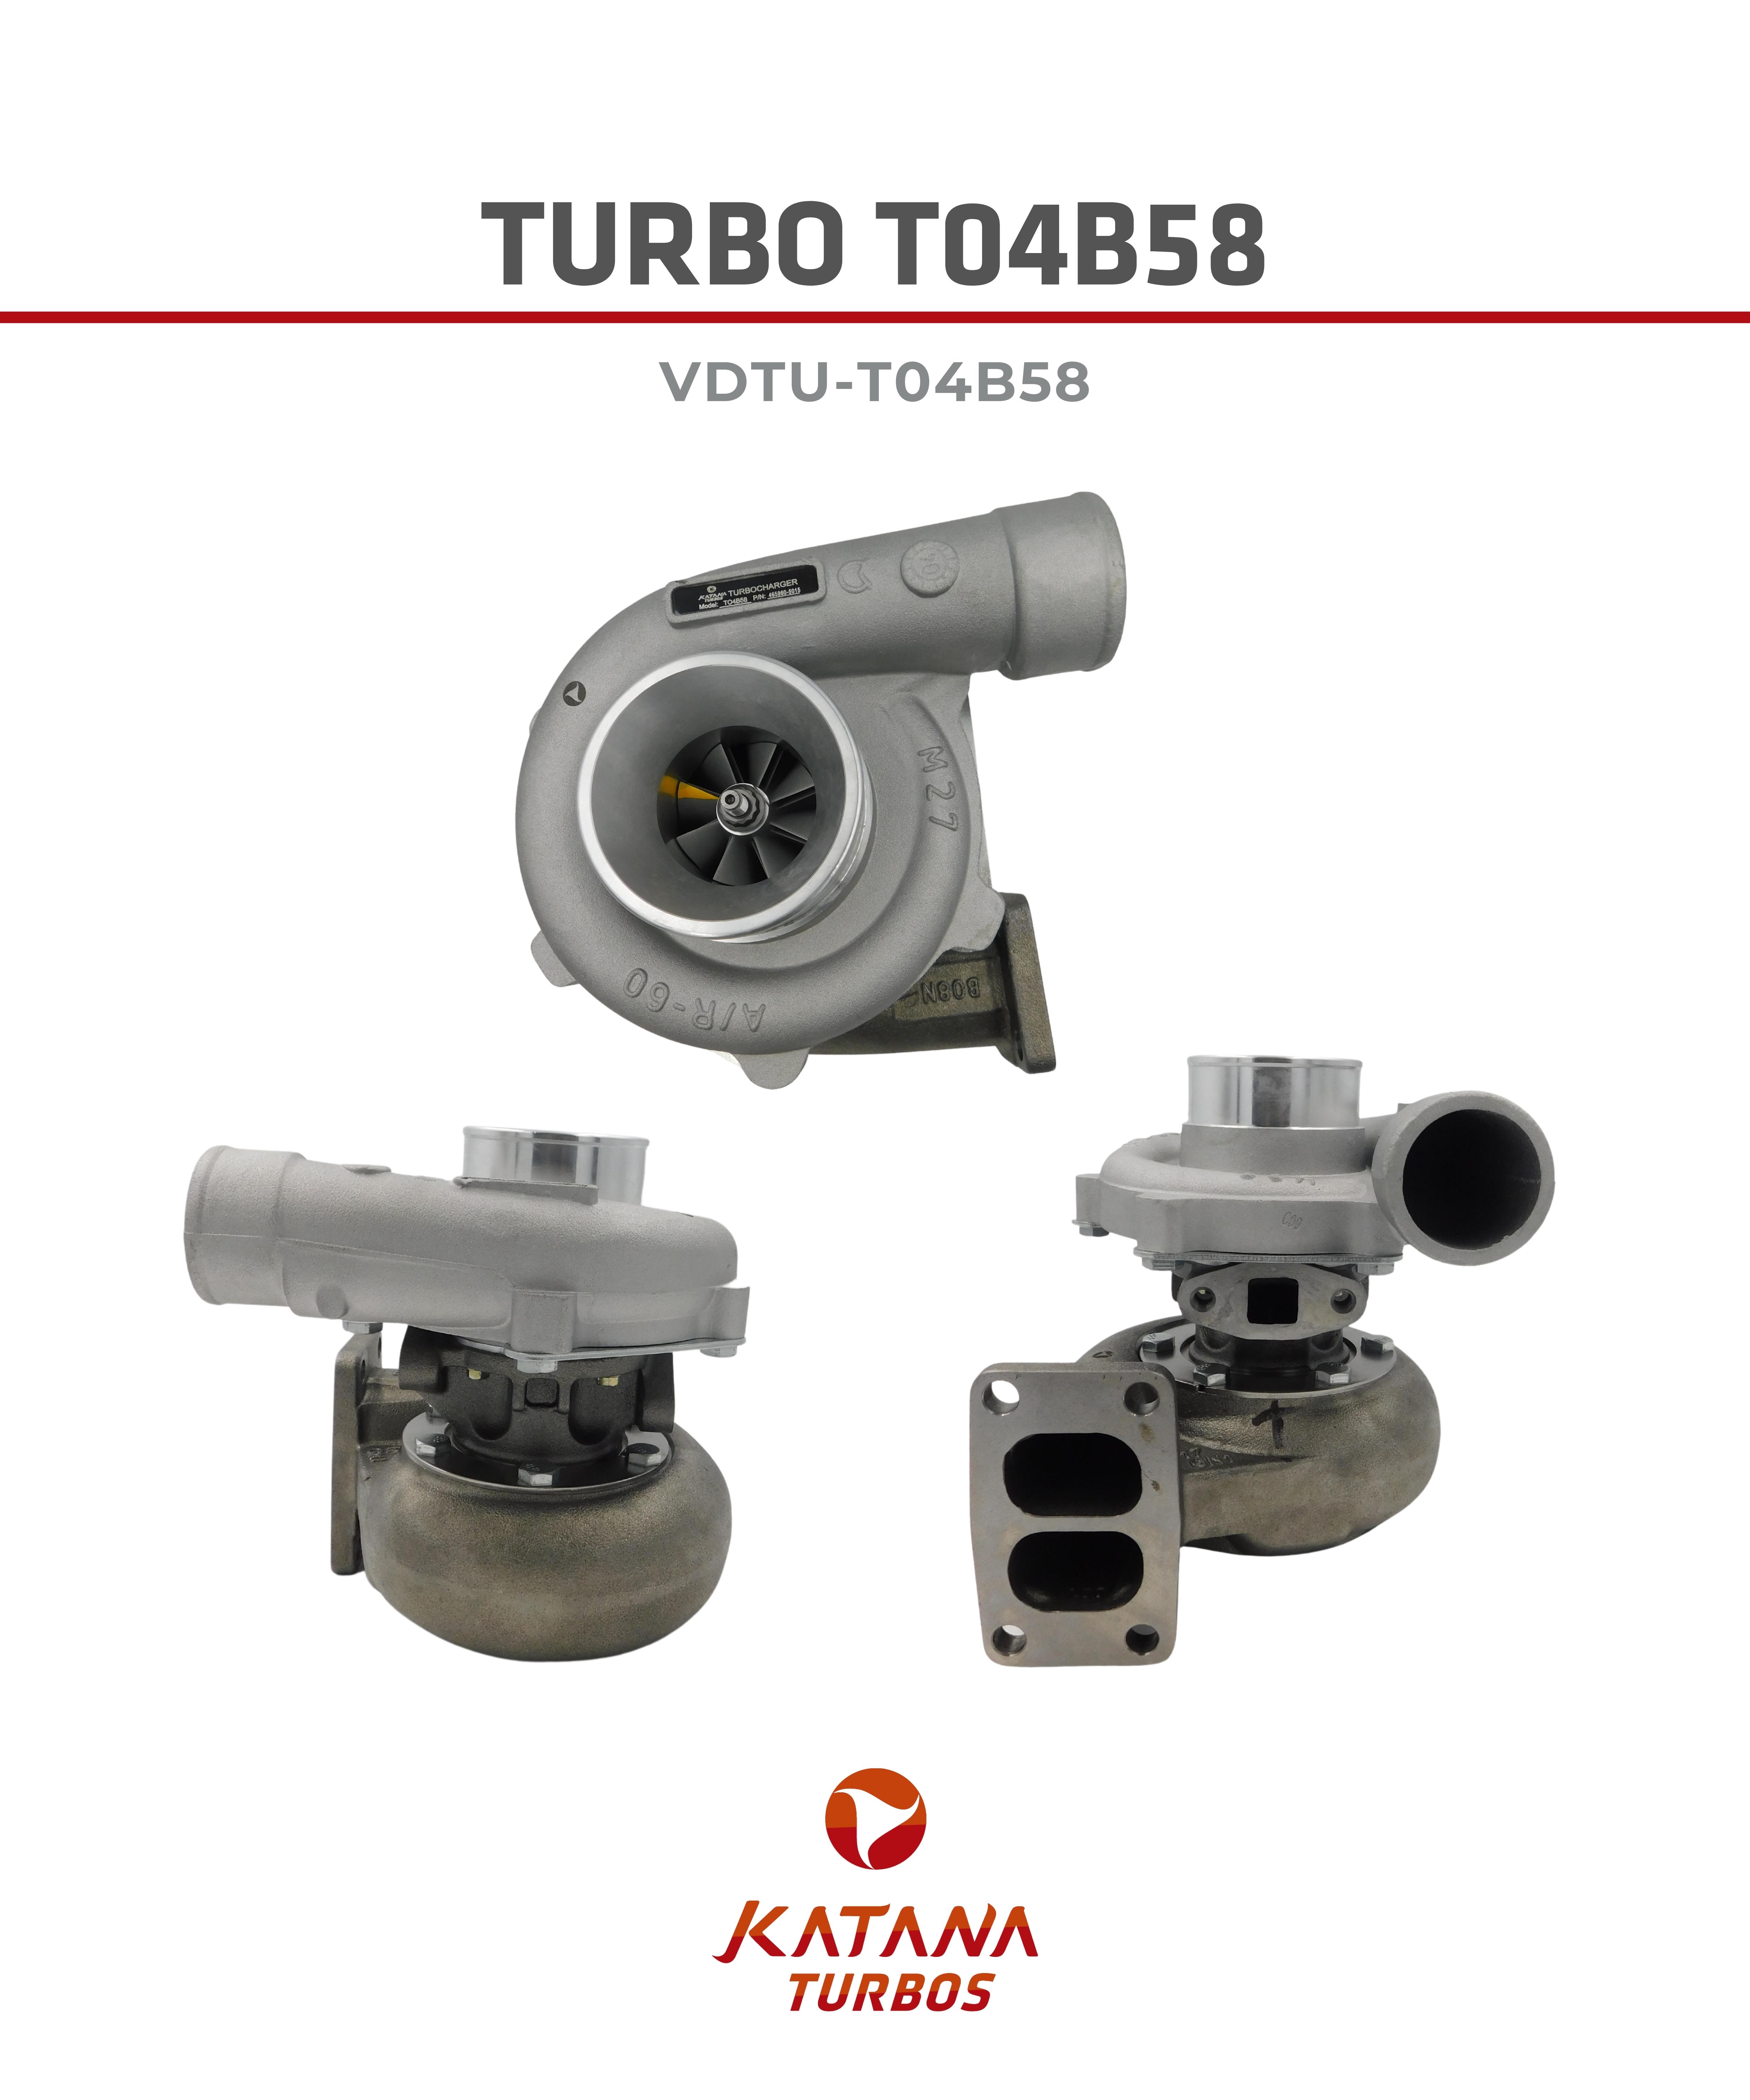 Turbo T04B58